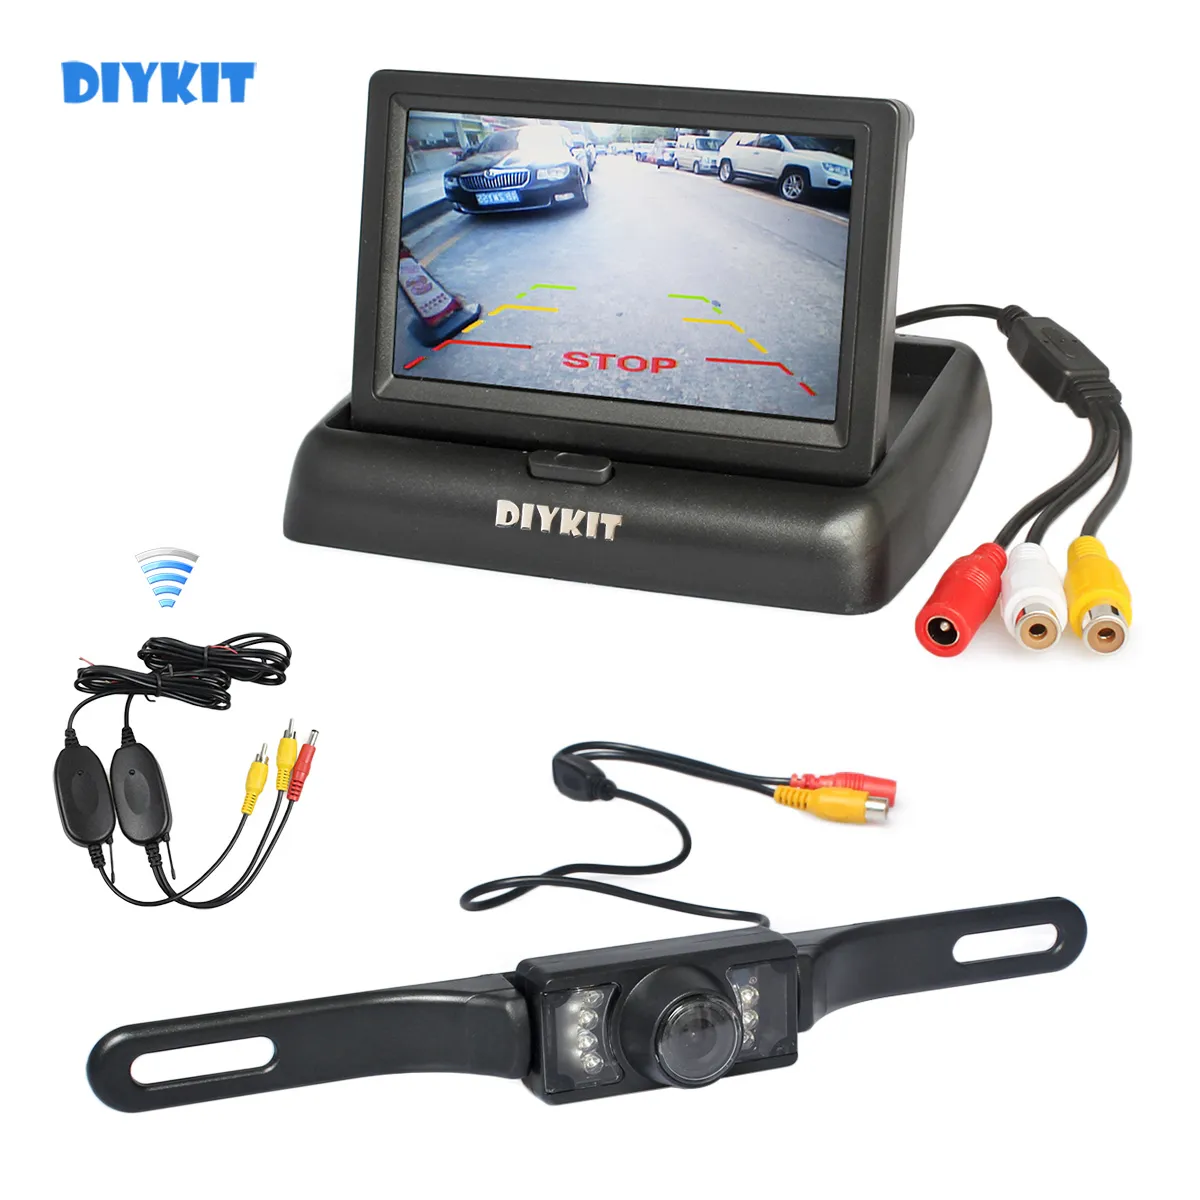 DIYKIT Kit de caméra de recul de voiture sans fil 4.3 pouces sauvegarde moniteur de voiture écran LCD HD voiture vue arrière caméra système de stationnement